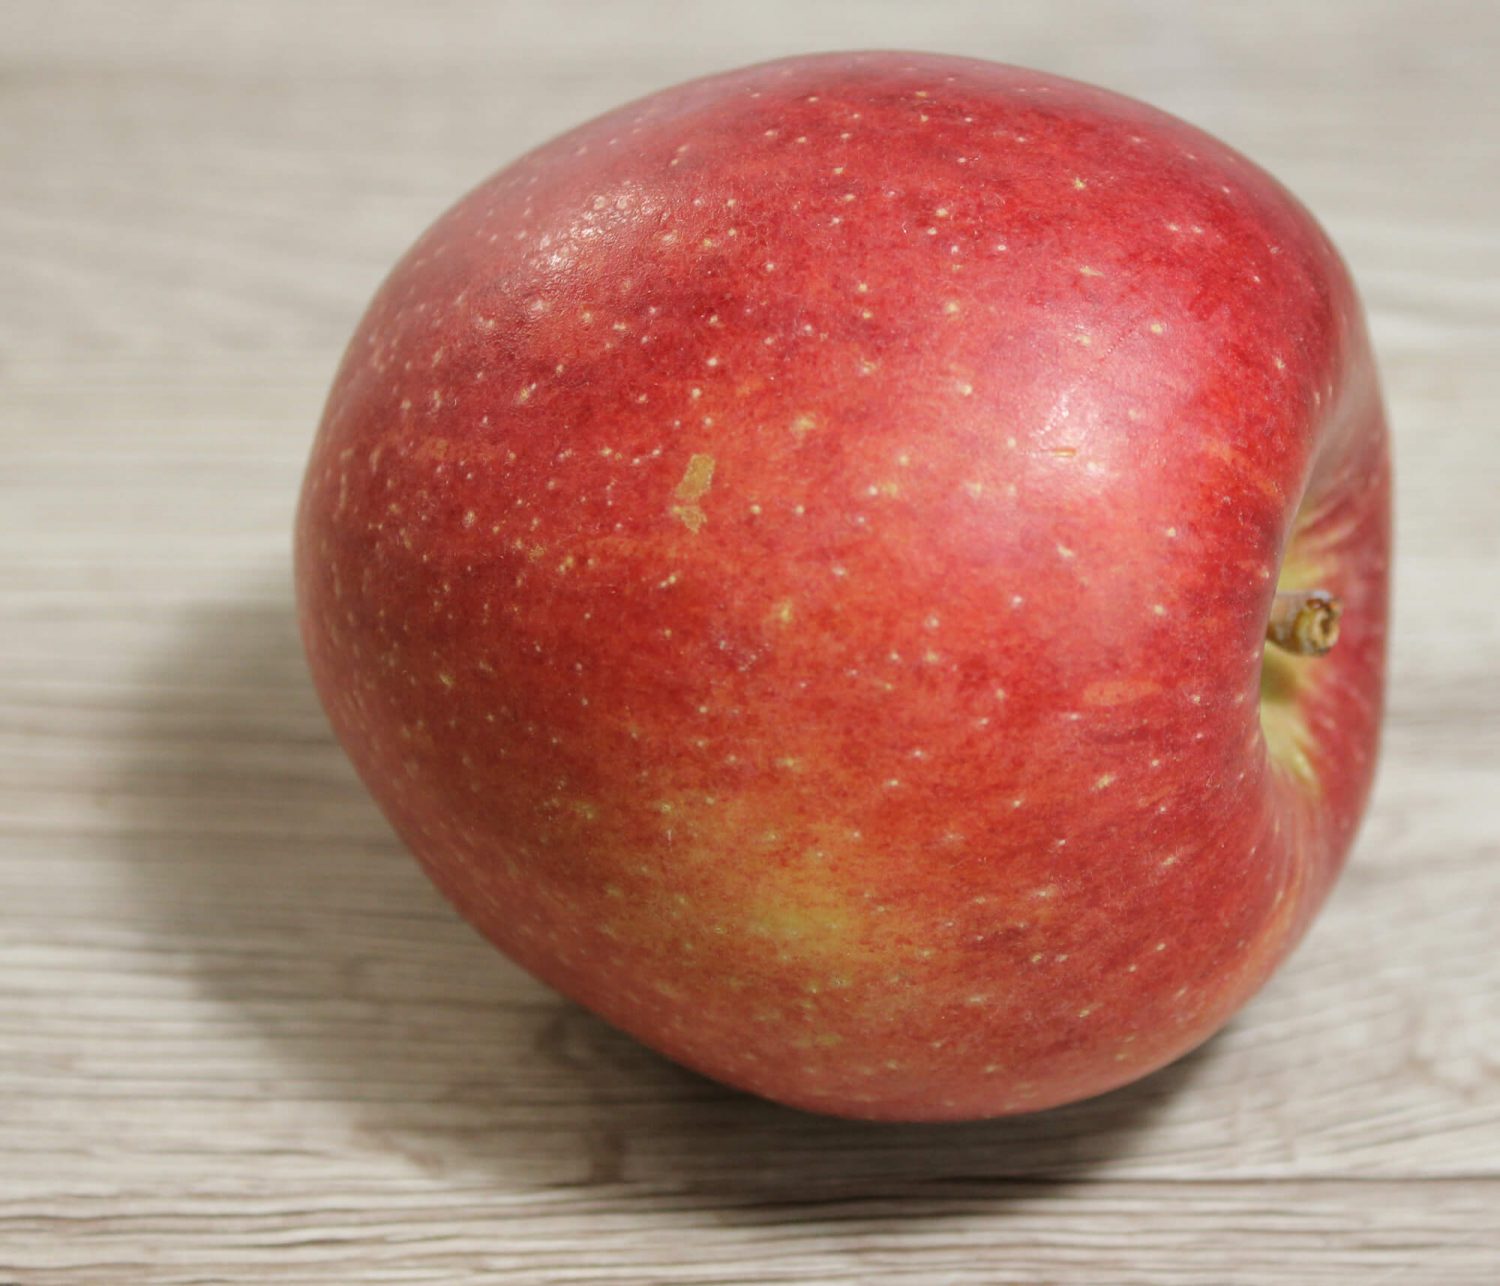 Liegender roter Apfel in Aufsicht seitlich